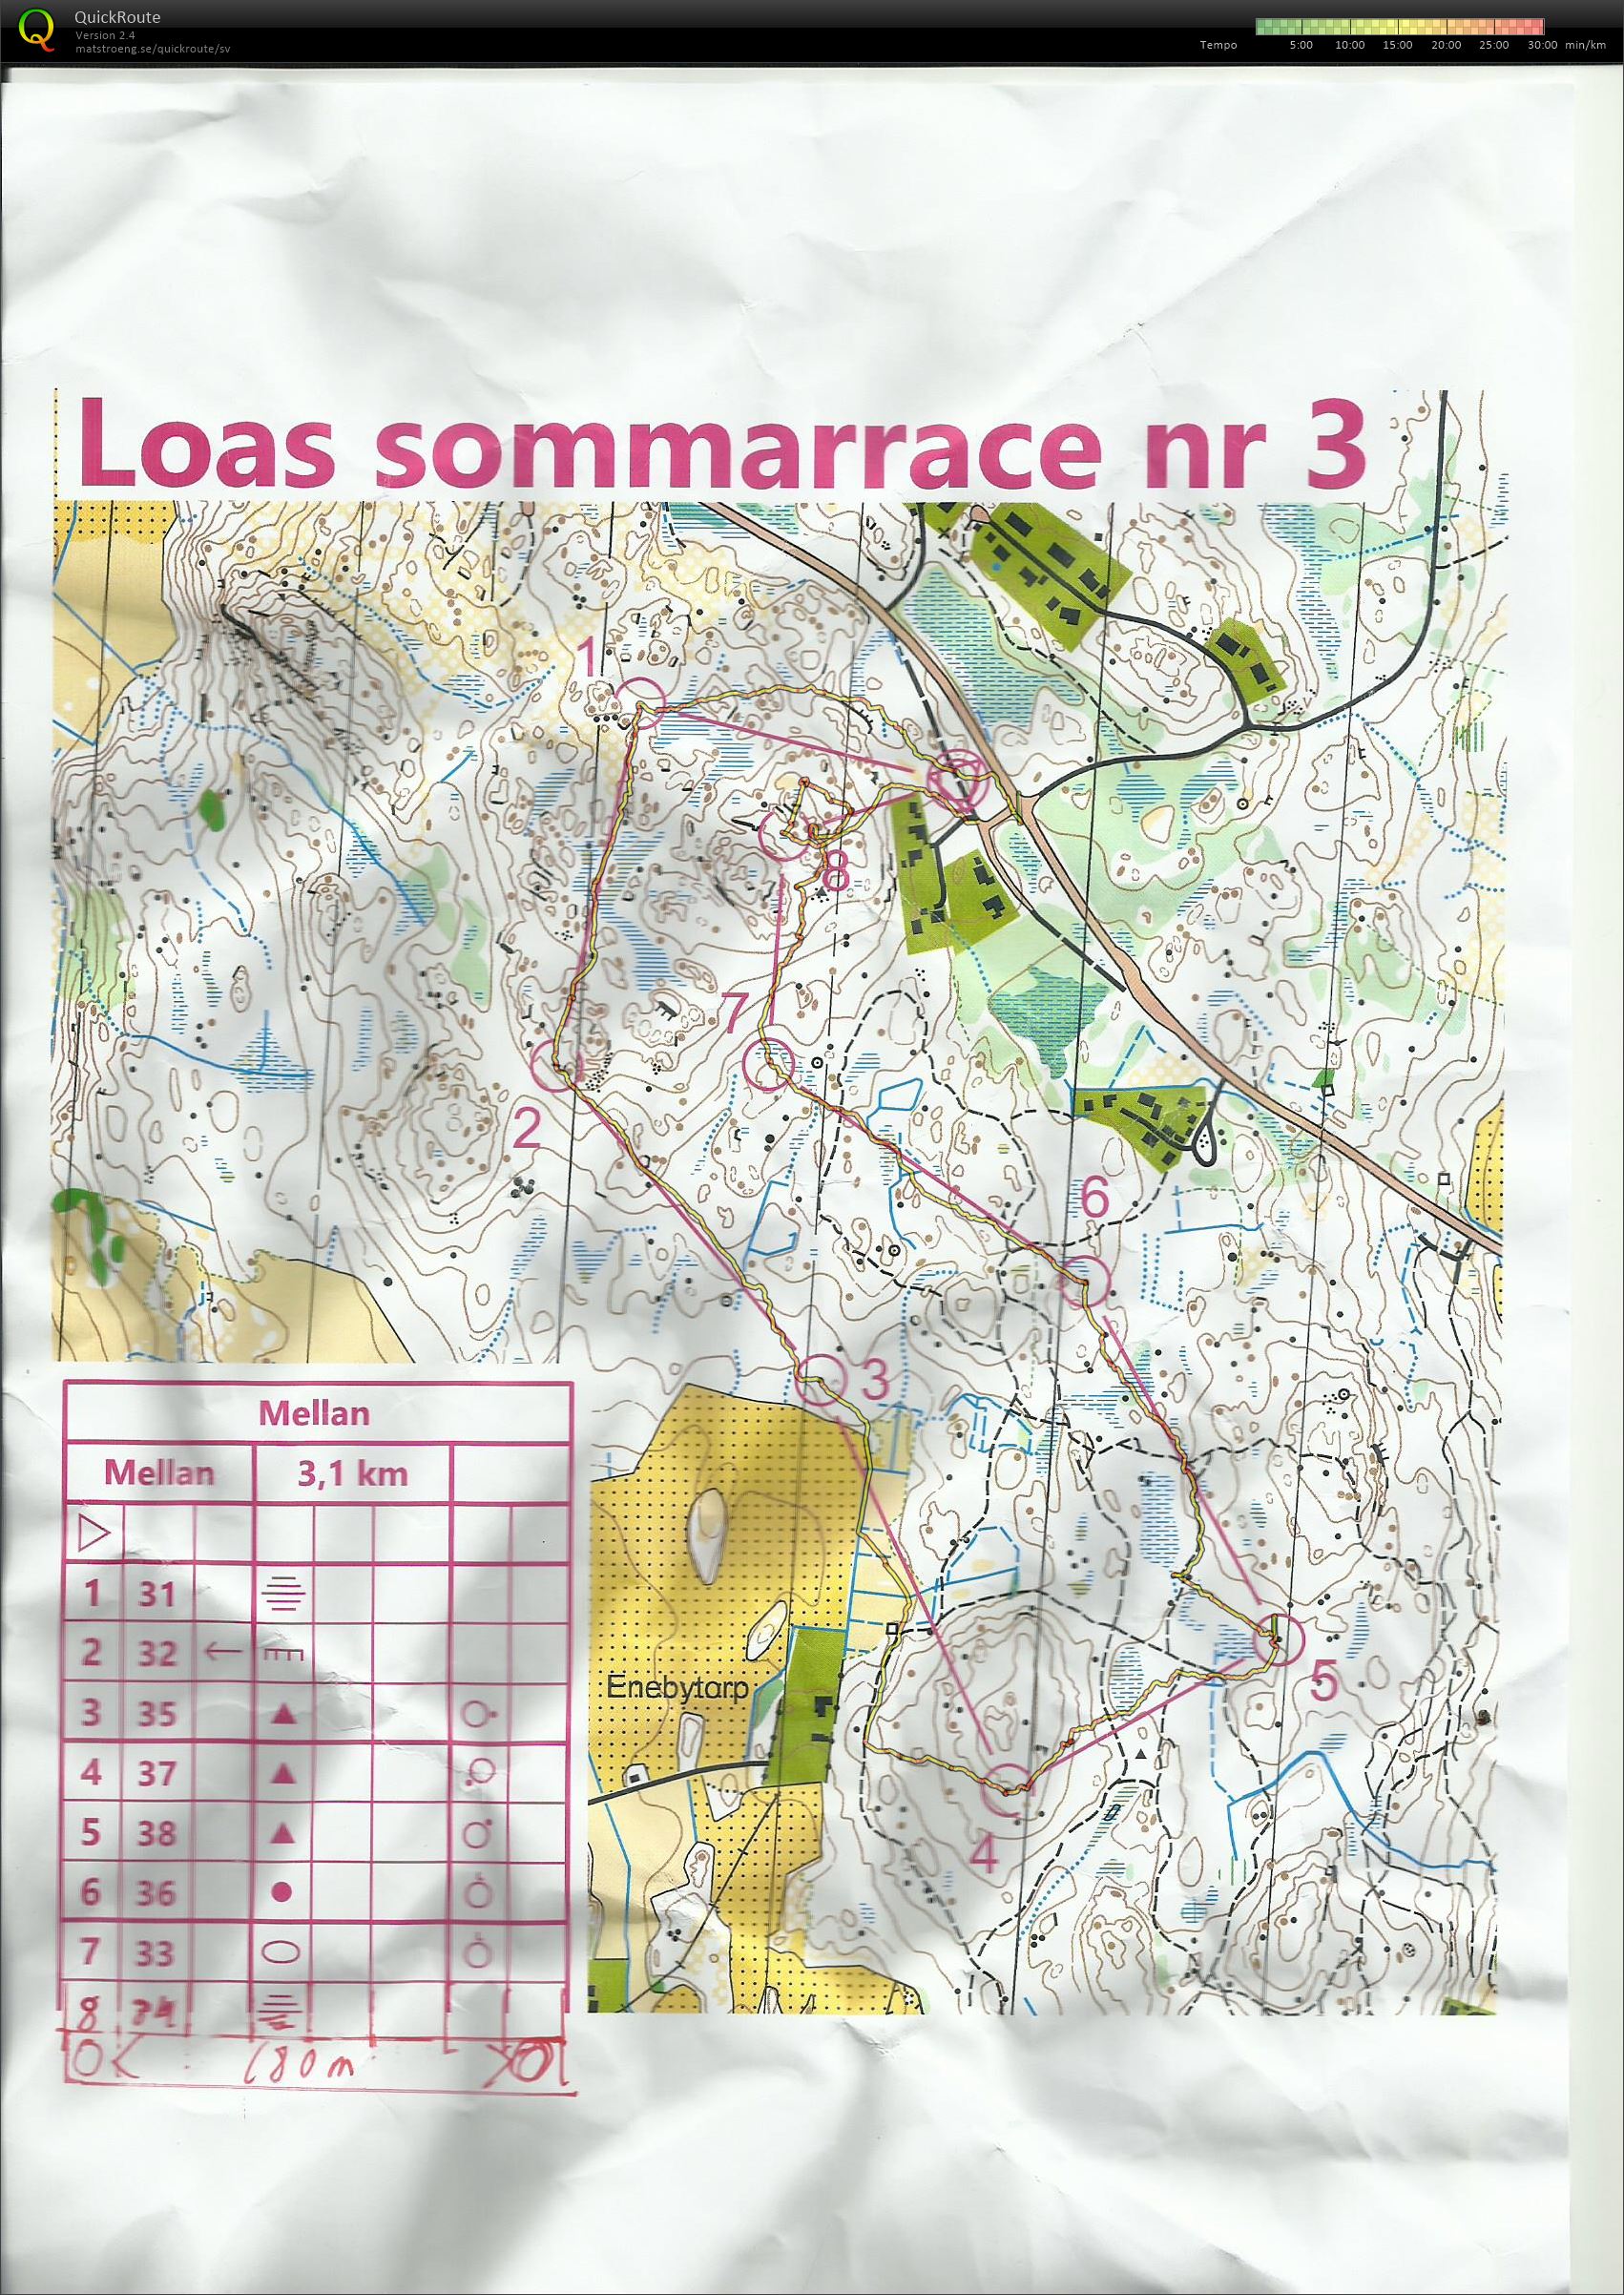 LOAs Sommarrace 3 (05/08/2020)